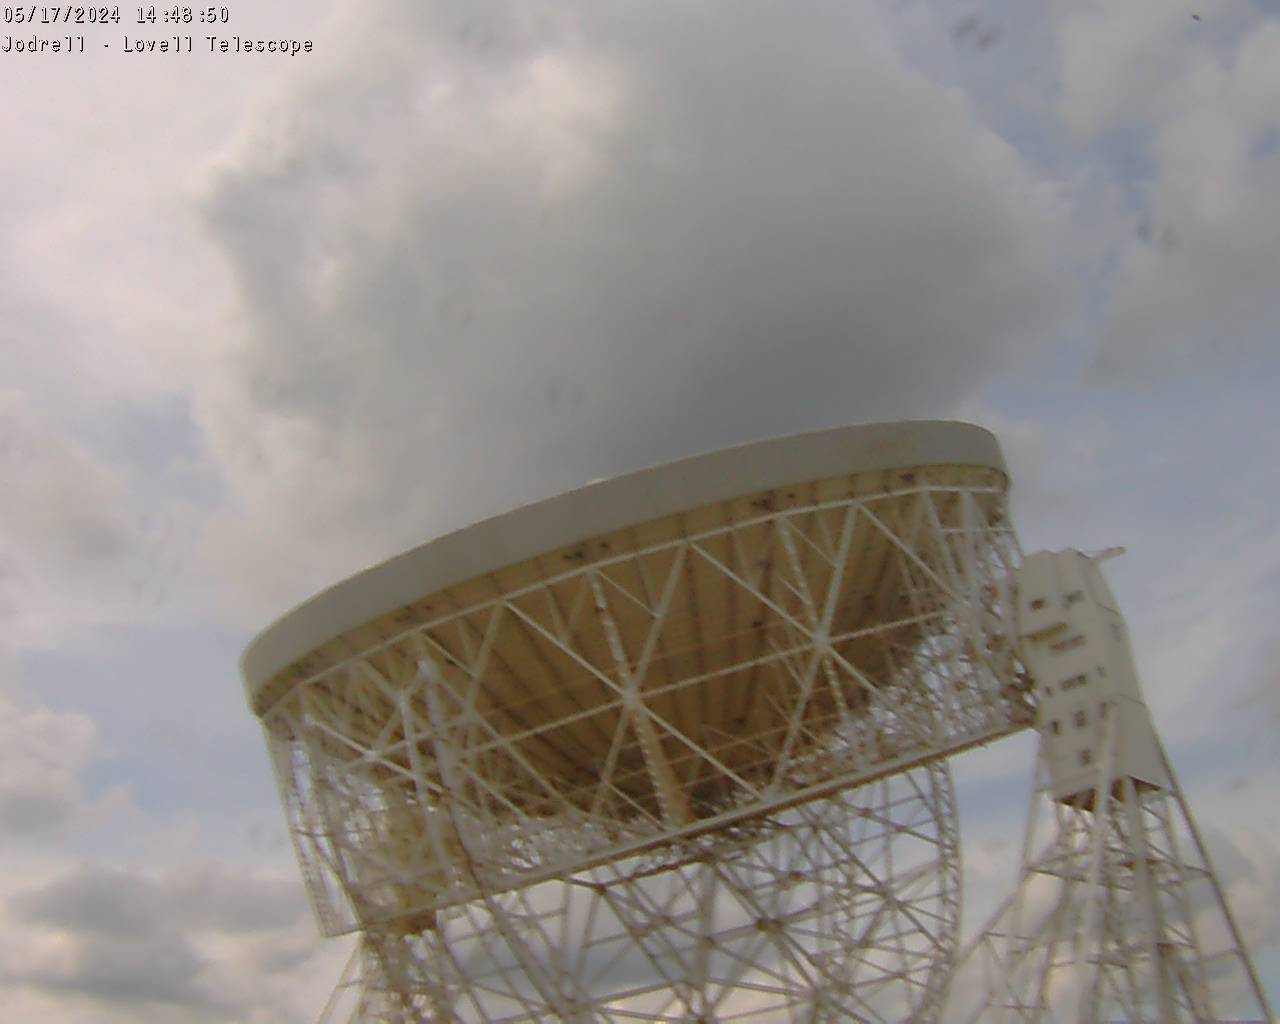 Observatorio Jodrell Bank Sáb. 14:49